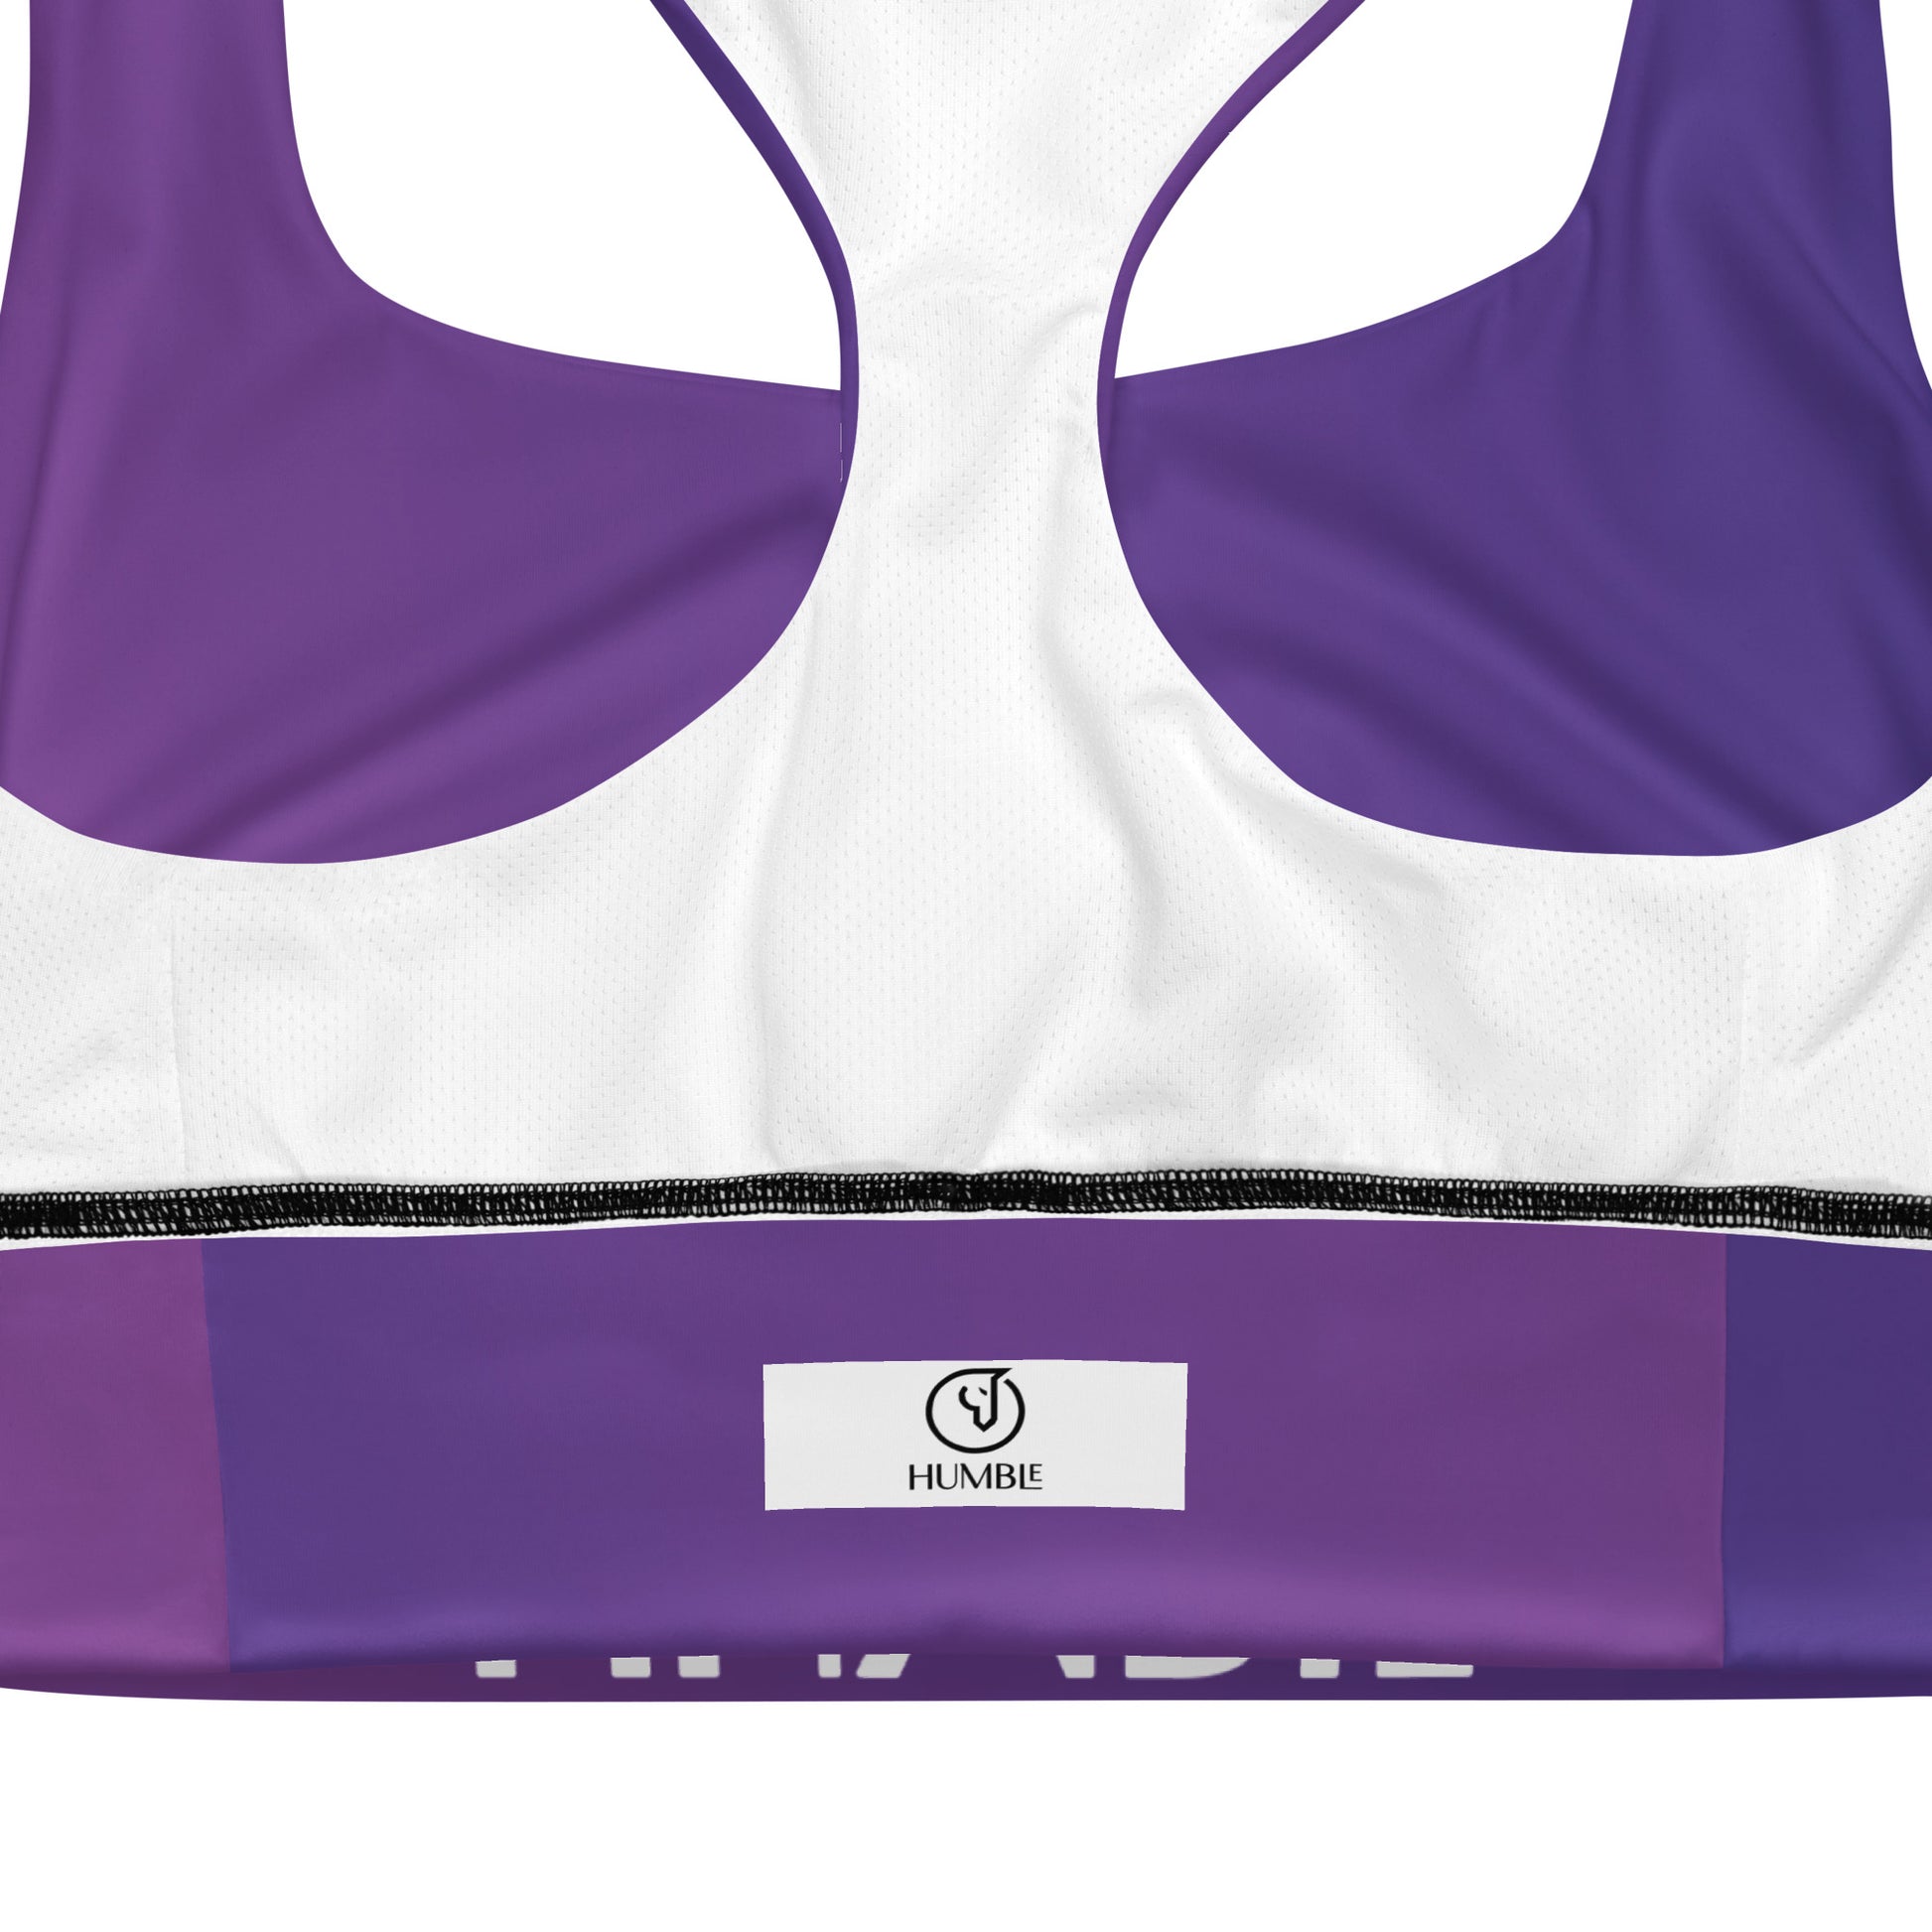 Humble Sportswear™ Women's Amethyst Purple Compression Sports Bra - Mireille Fine Art